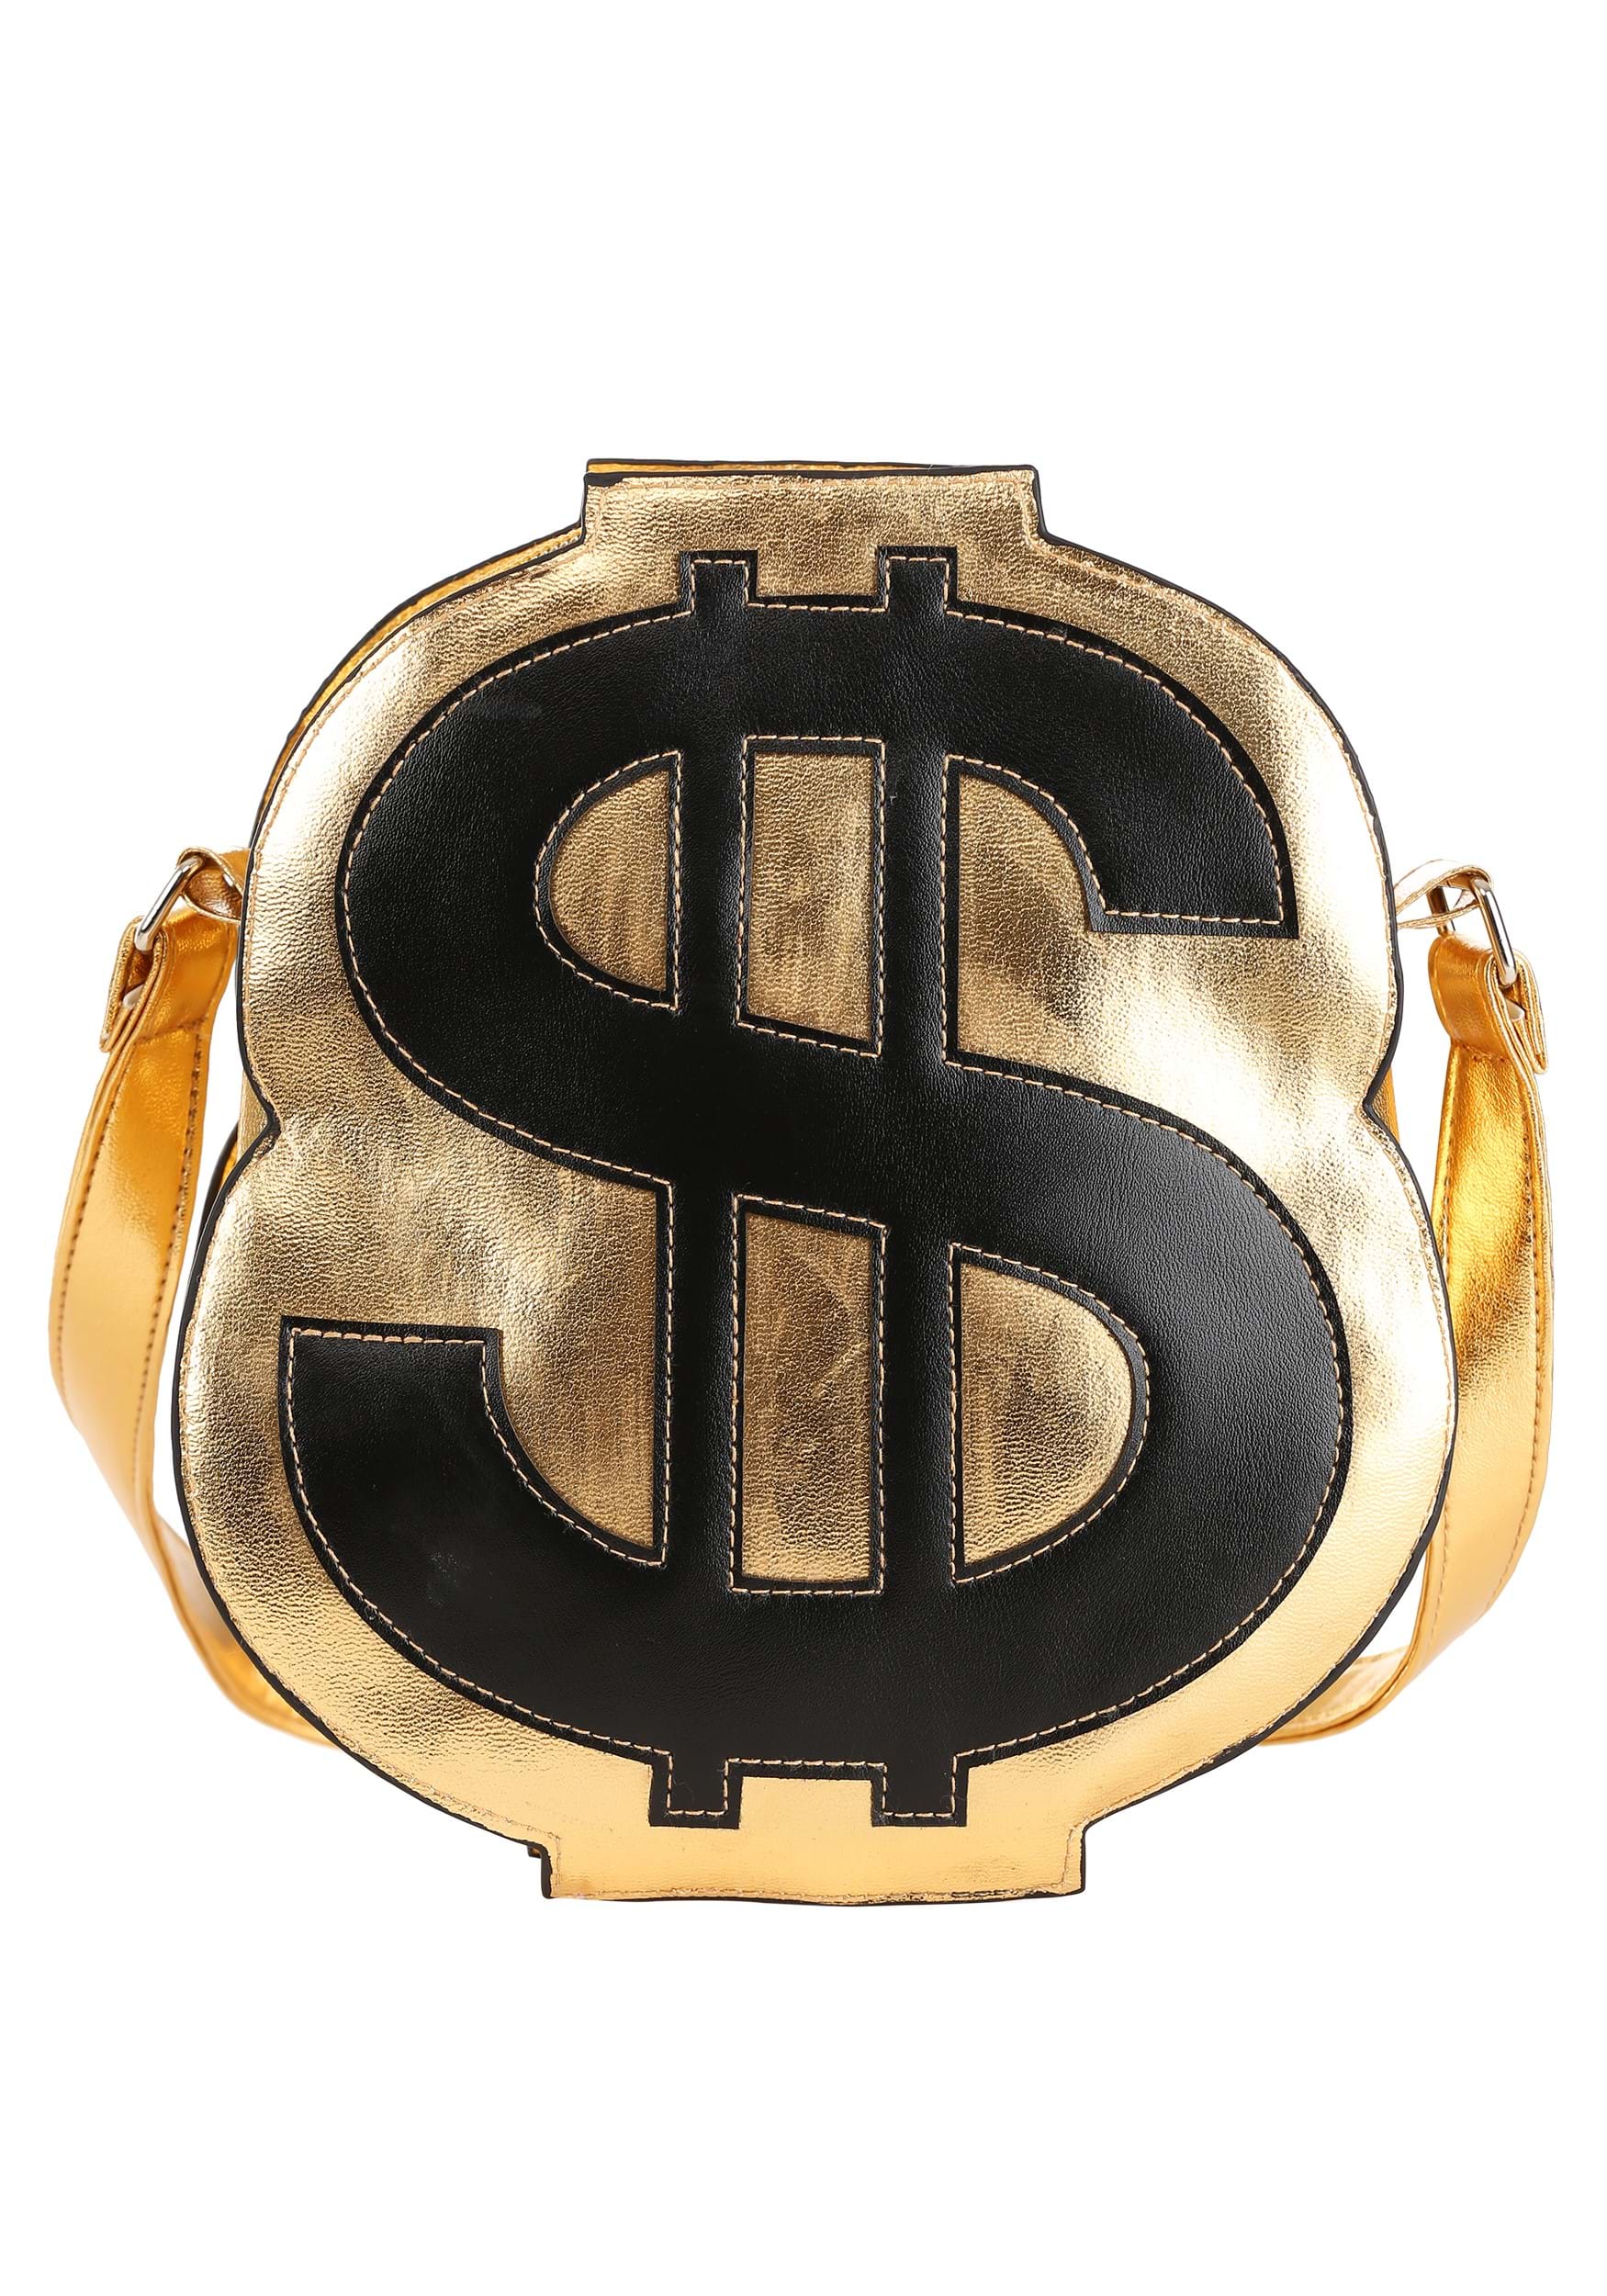 Money Bag, Coin, Gold, Handbag, Coin Purse, Gold Coin, Food, Saving, Money  Bag, Money, Bag png | PNGWing